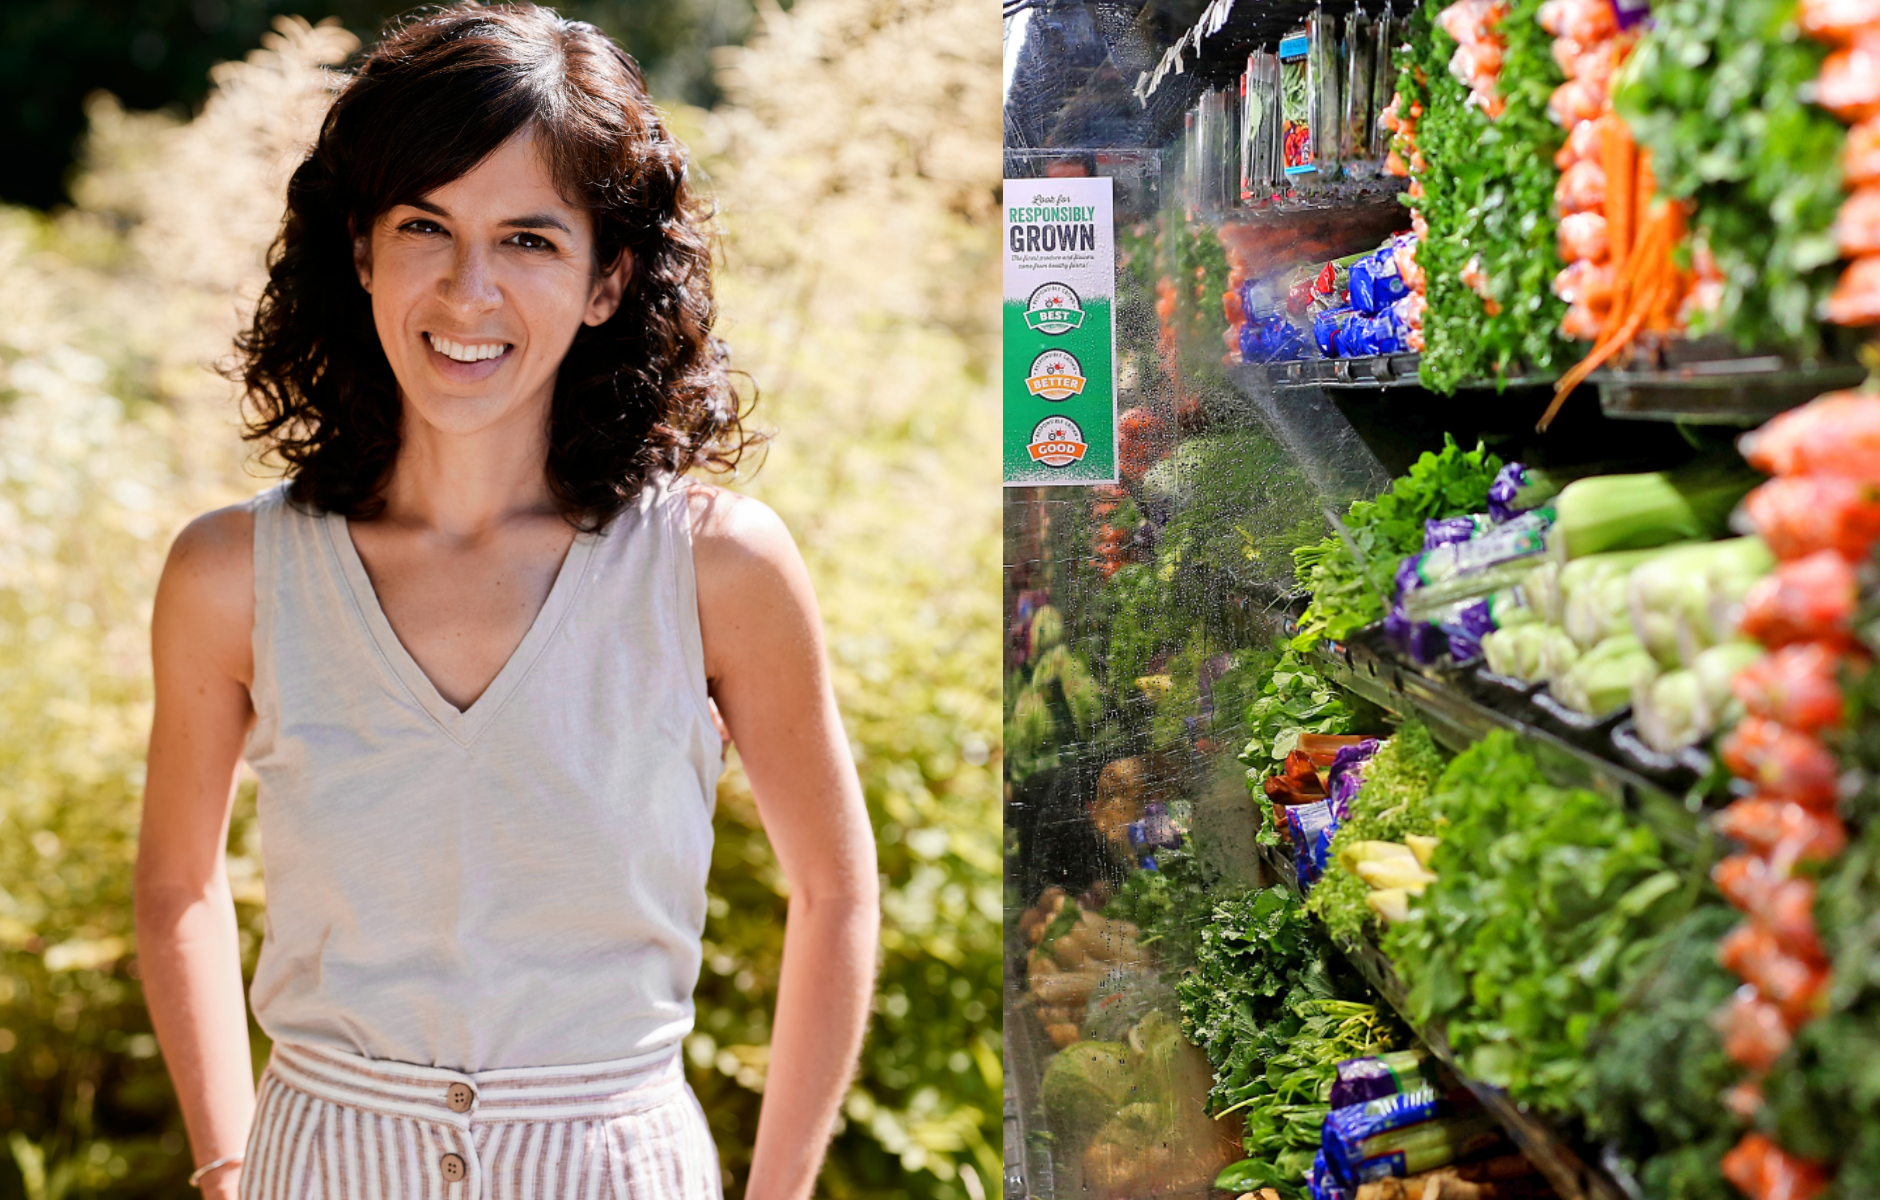 eine ernährungsberaterin, die sich an die mediterrane diät hält, verrät 4 lebensmittel, die sie immer im supermarkt kauft